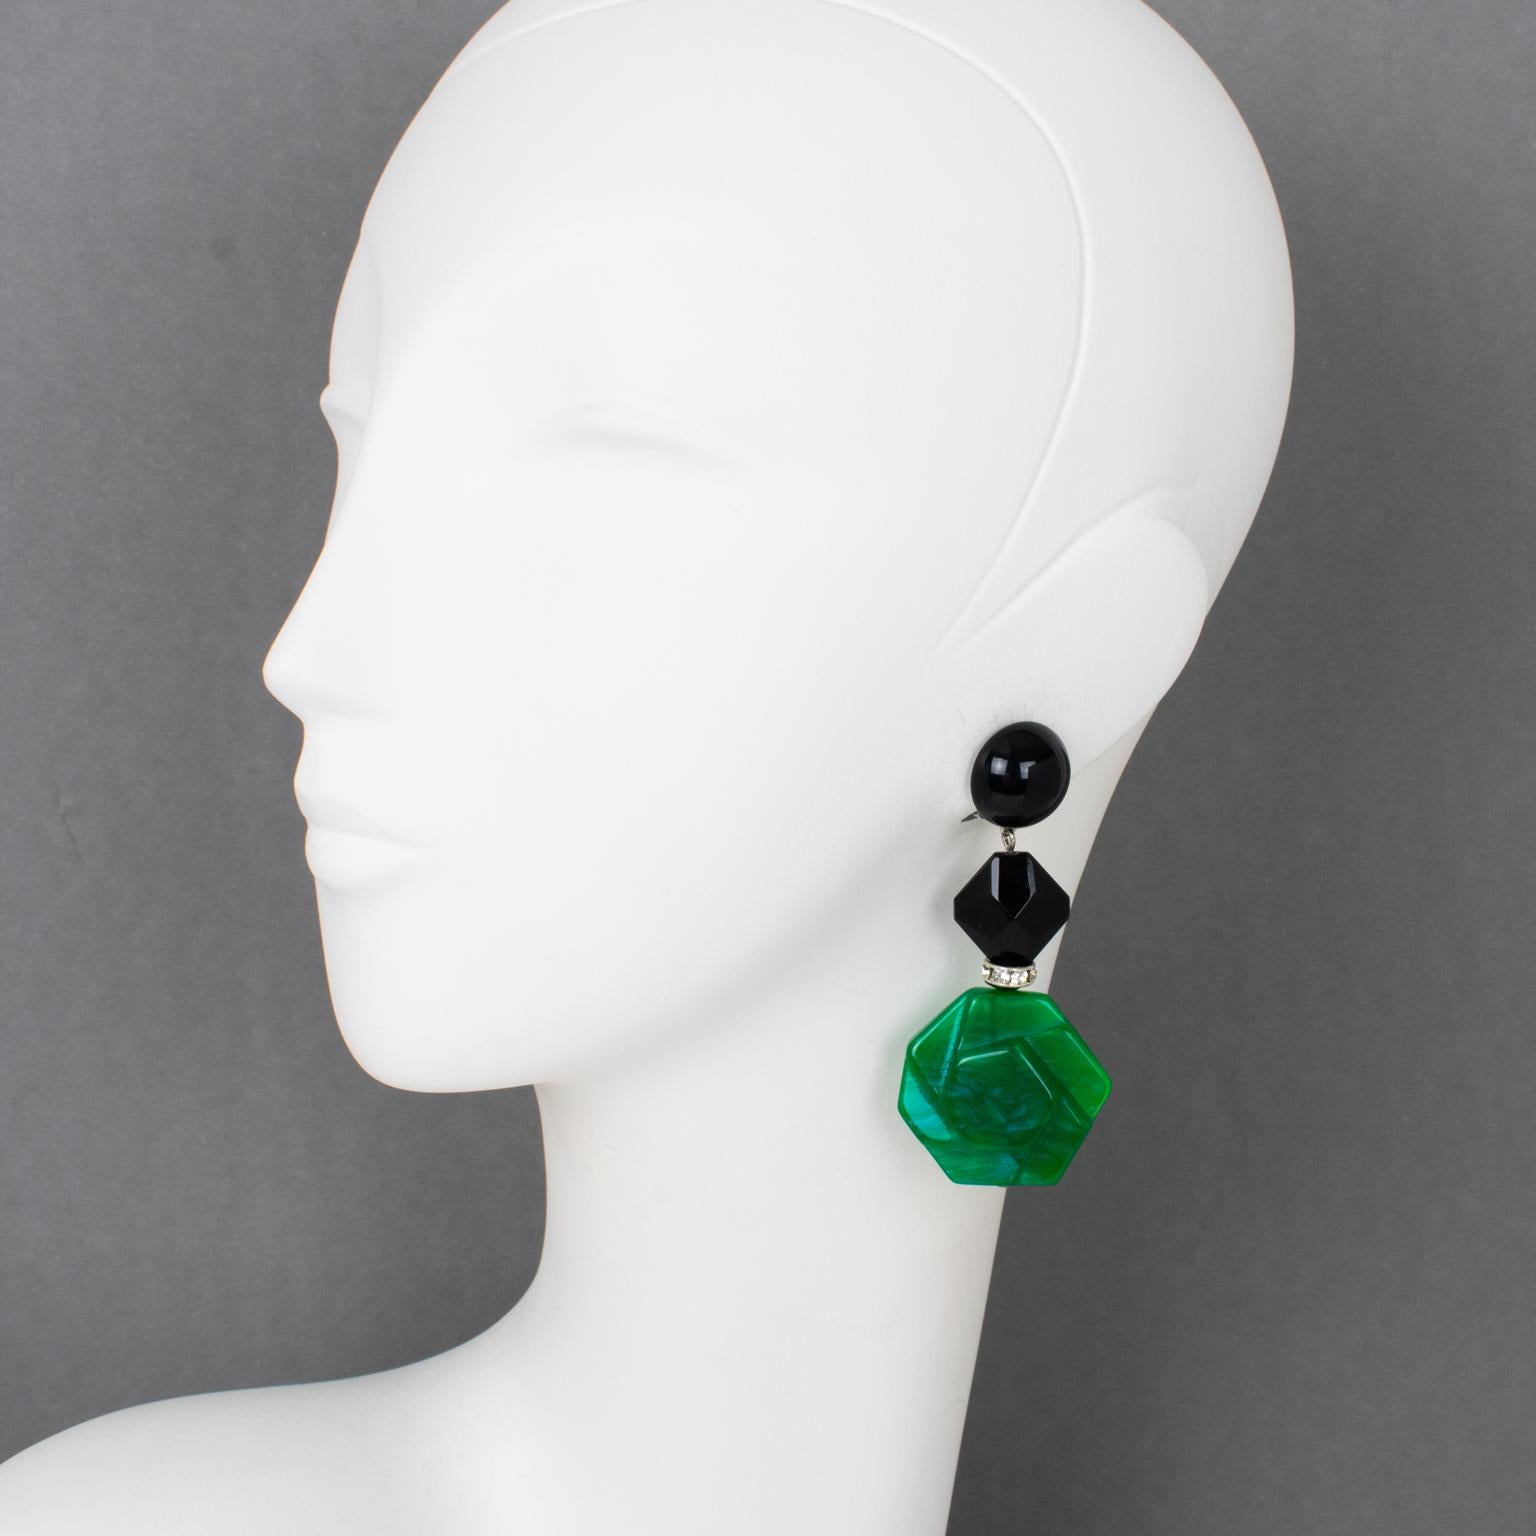 Diese sehr schicken Angela Caputi Ohrringe aus Kunstharz haben eine baumelnde Form mit schwarzer Farbe, die mit smaragdgrünen, geometrischen Kieselsteinperlen aus Marmorharz kontrastiert und mit kristallenen Strasssteinen ergänzt wird. Ihre